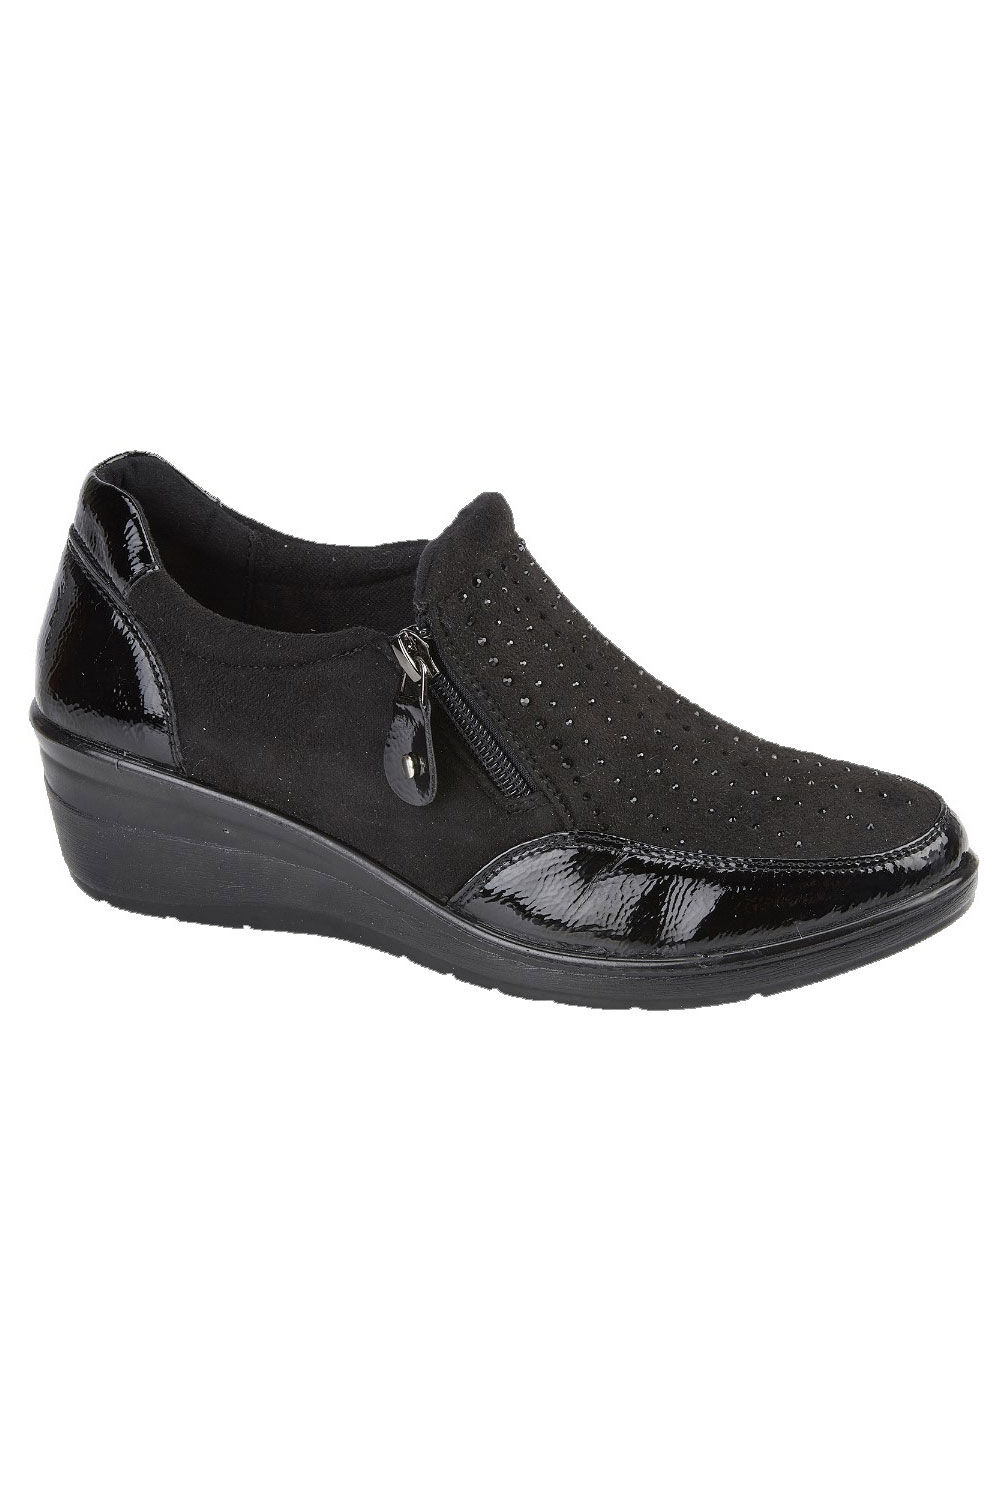 Jo & Joe Black - Diamante Wedge Heel Ankle Boots, Size: 4